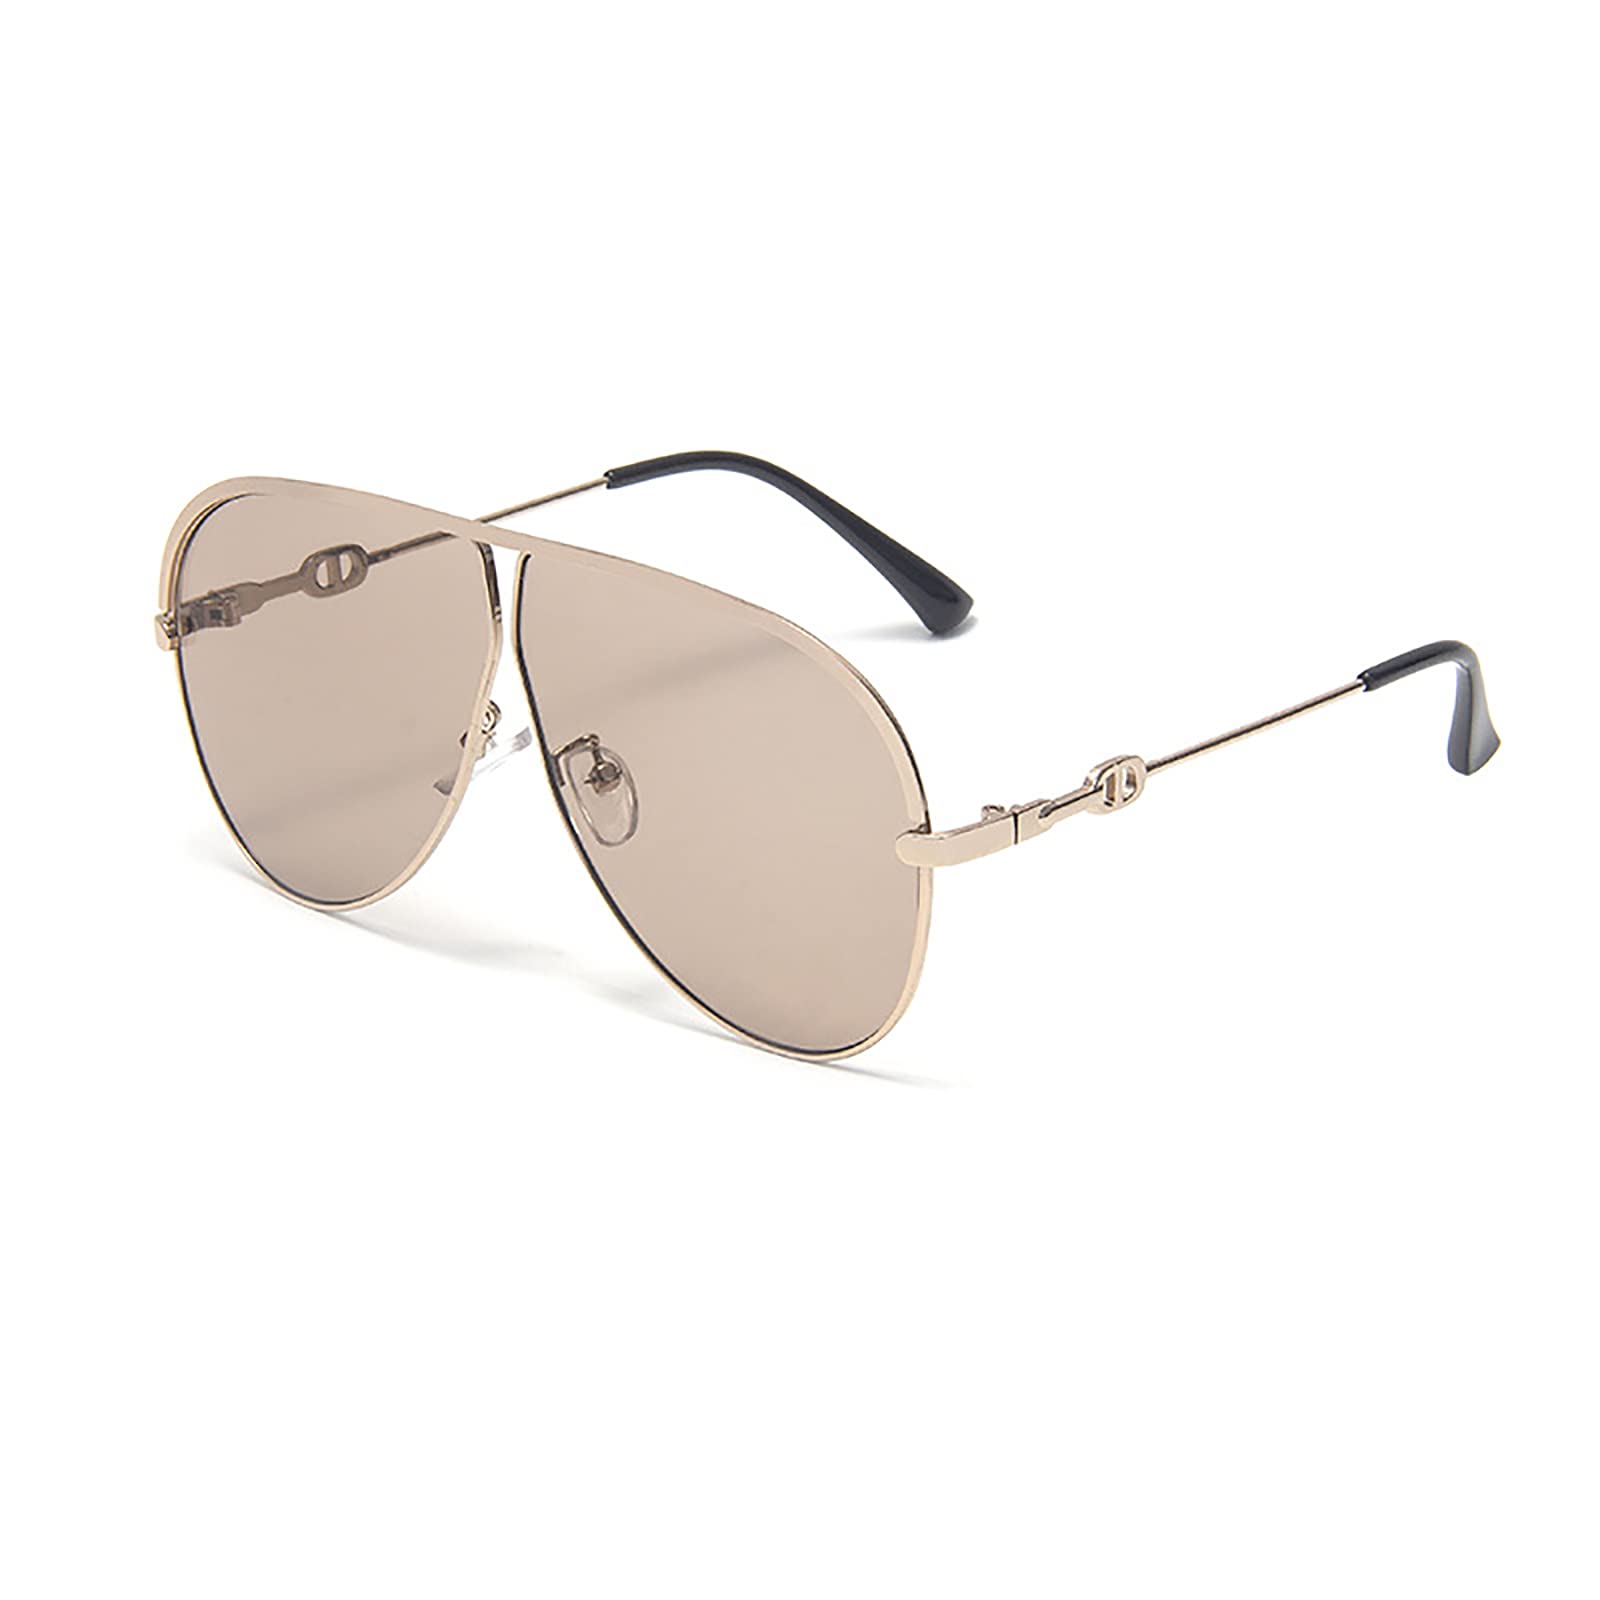 QFSLR Klassische Mode Damen Fliegersonnenbrille Mit Metallrahmen 100% UV-Schutz,G